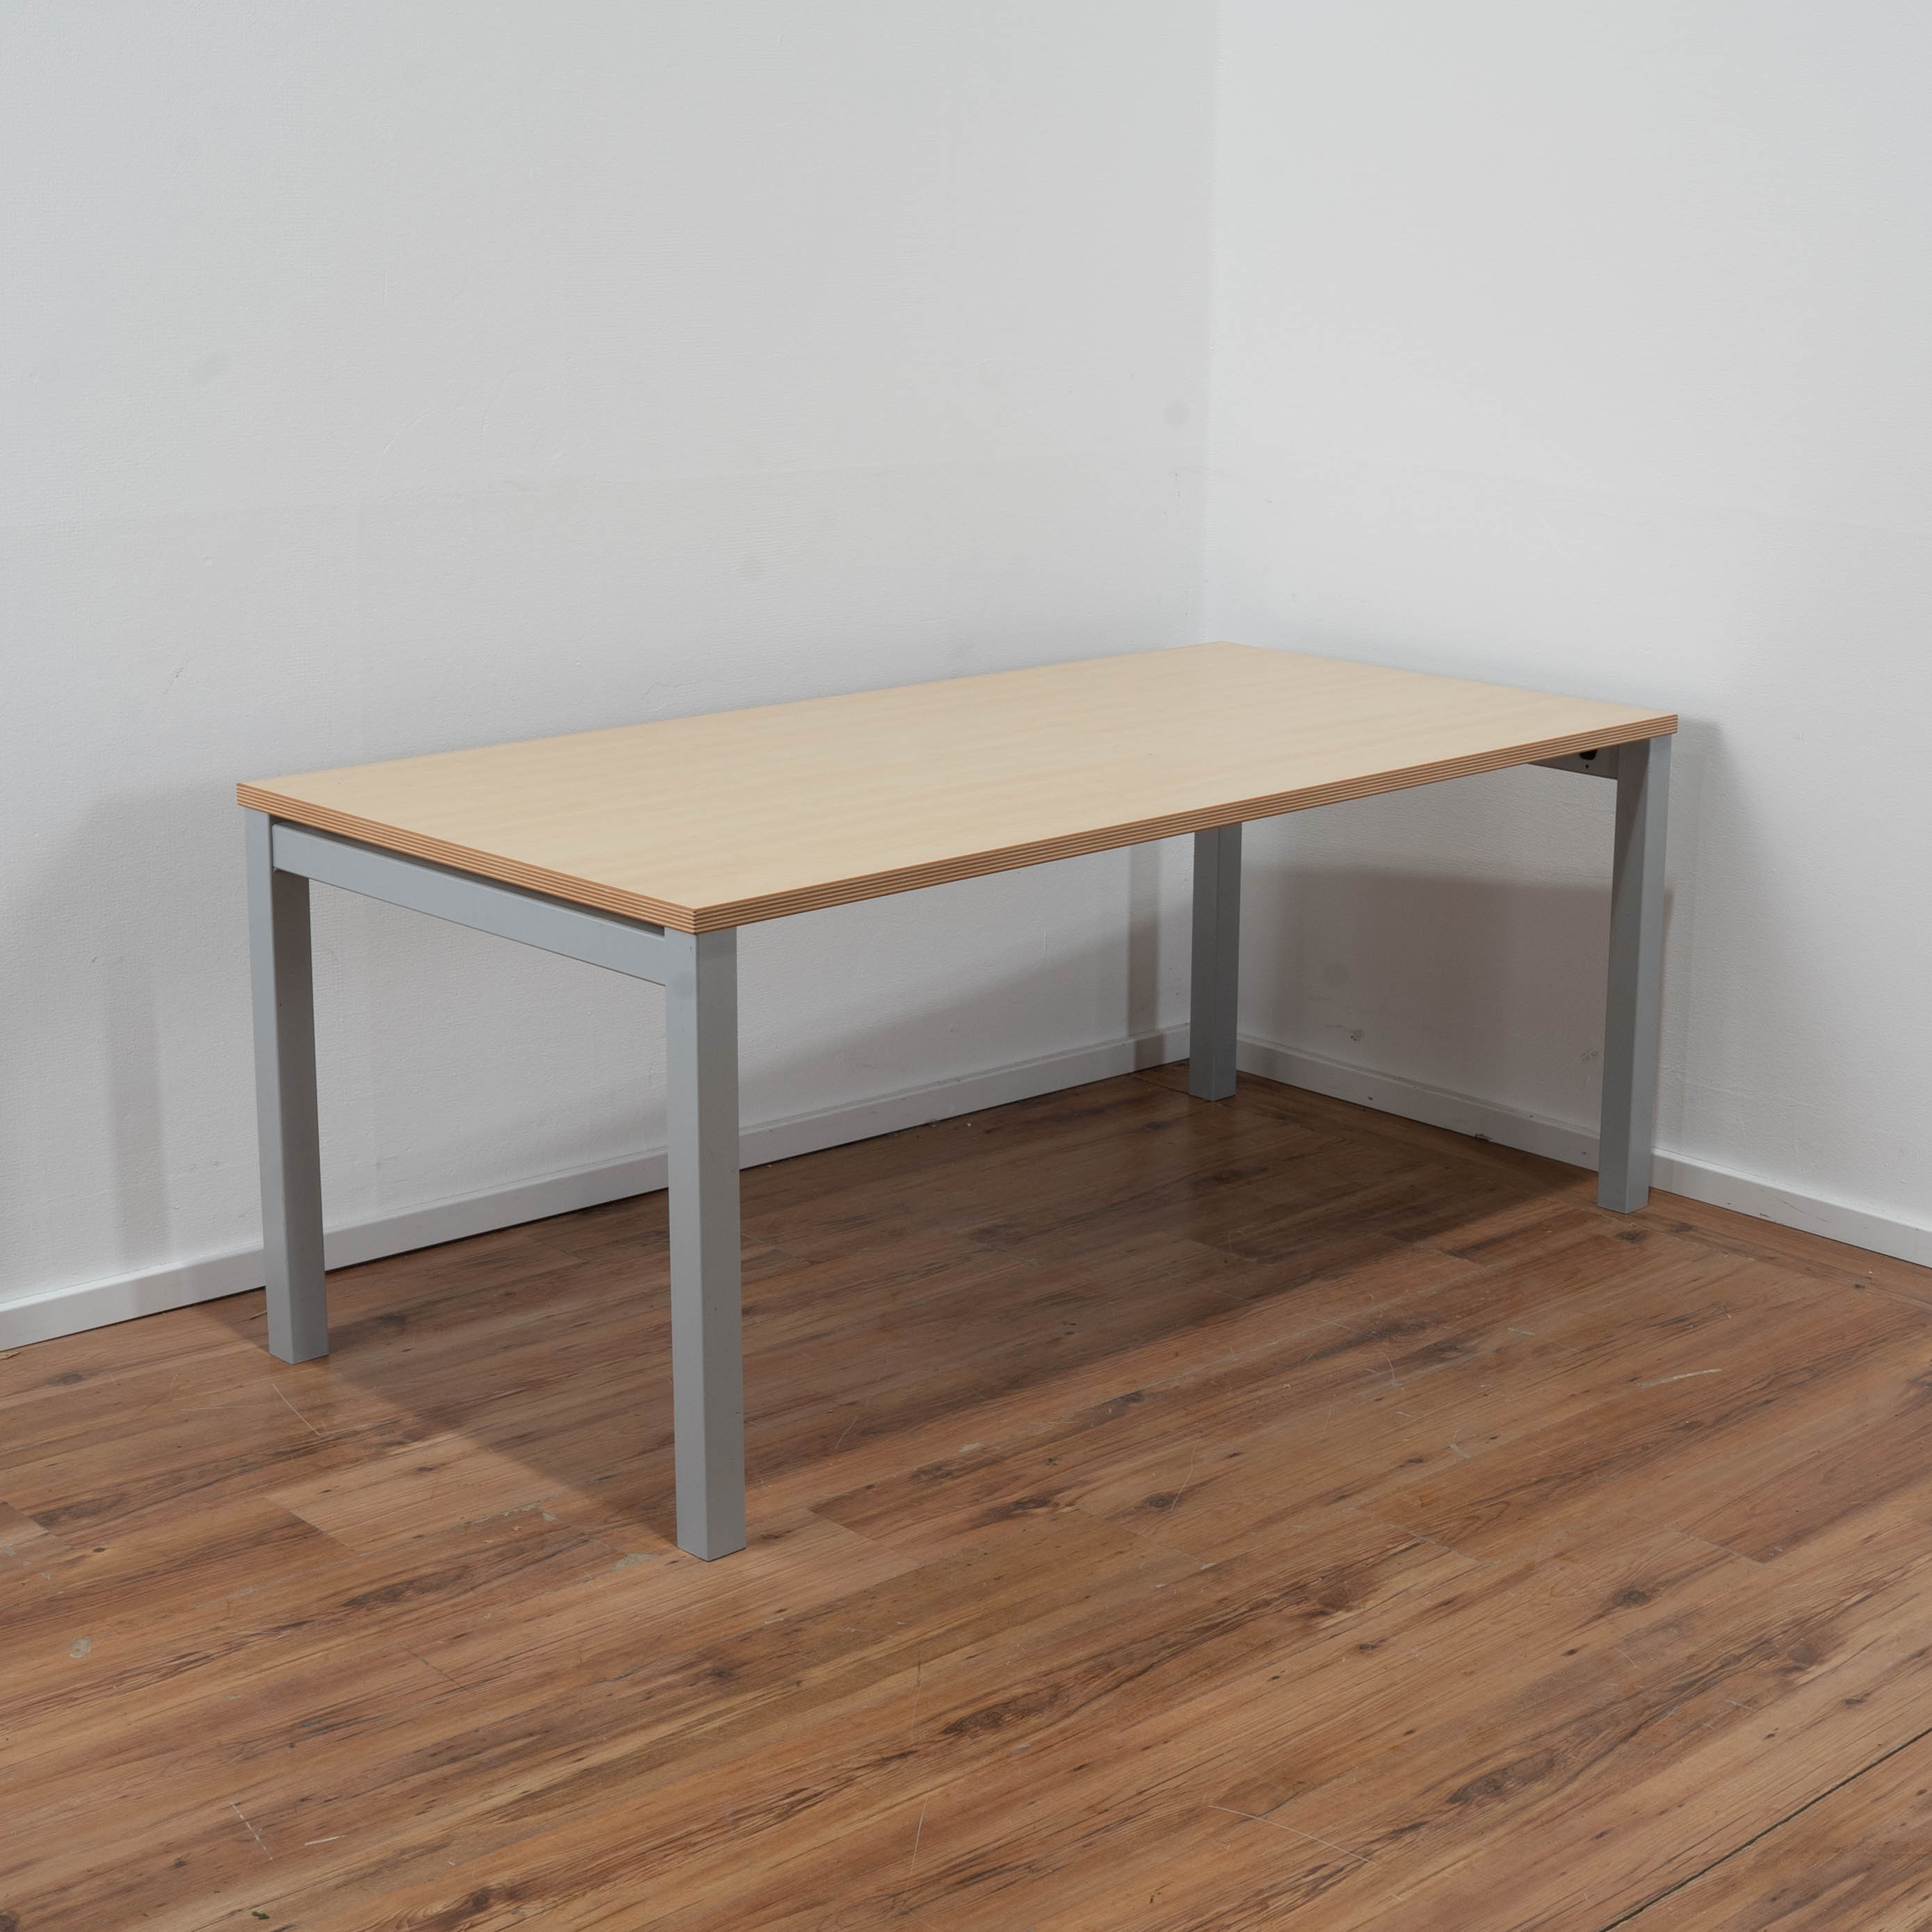 Steelcase Schreibtisch Ahorn - 160 x 80 cm - 4-Fußgestell grau 